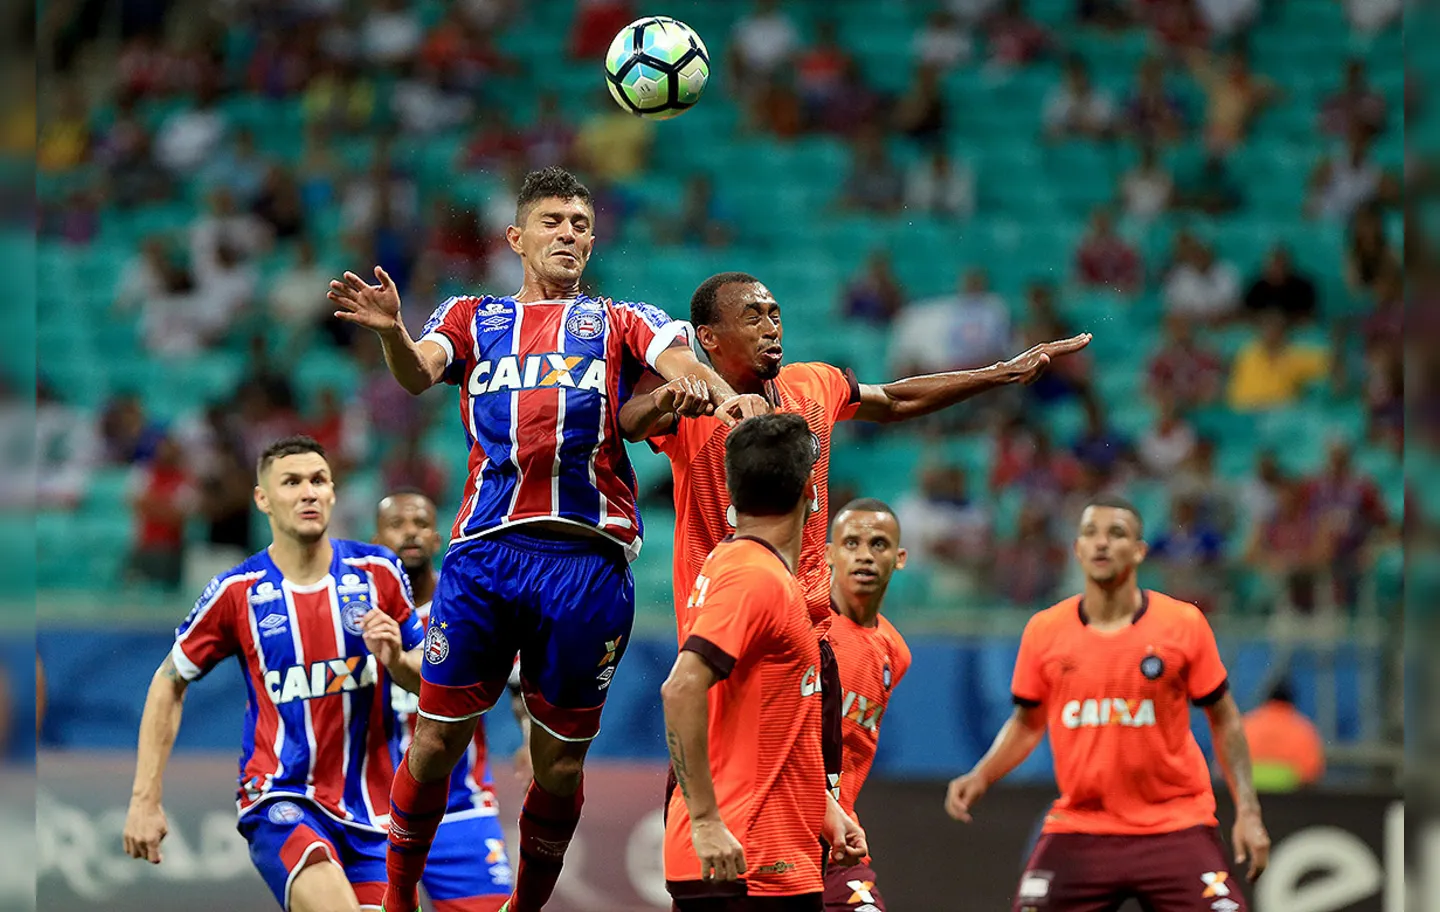 Volante tricolor Edson fez um dos gols do histórico 6 a 2 do Bahia sobre o Atlético-PR na estreia